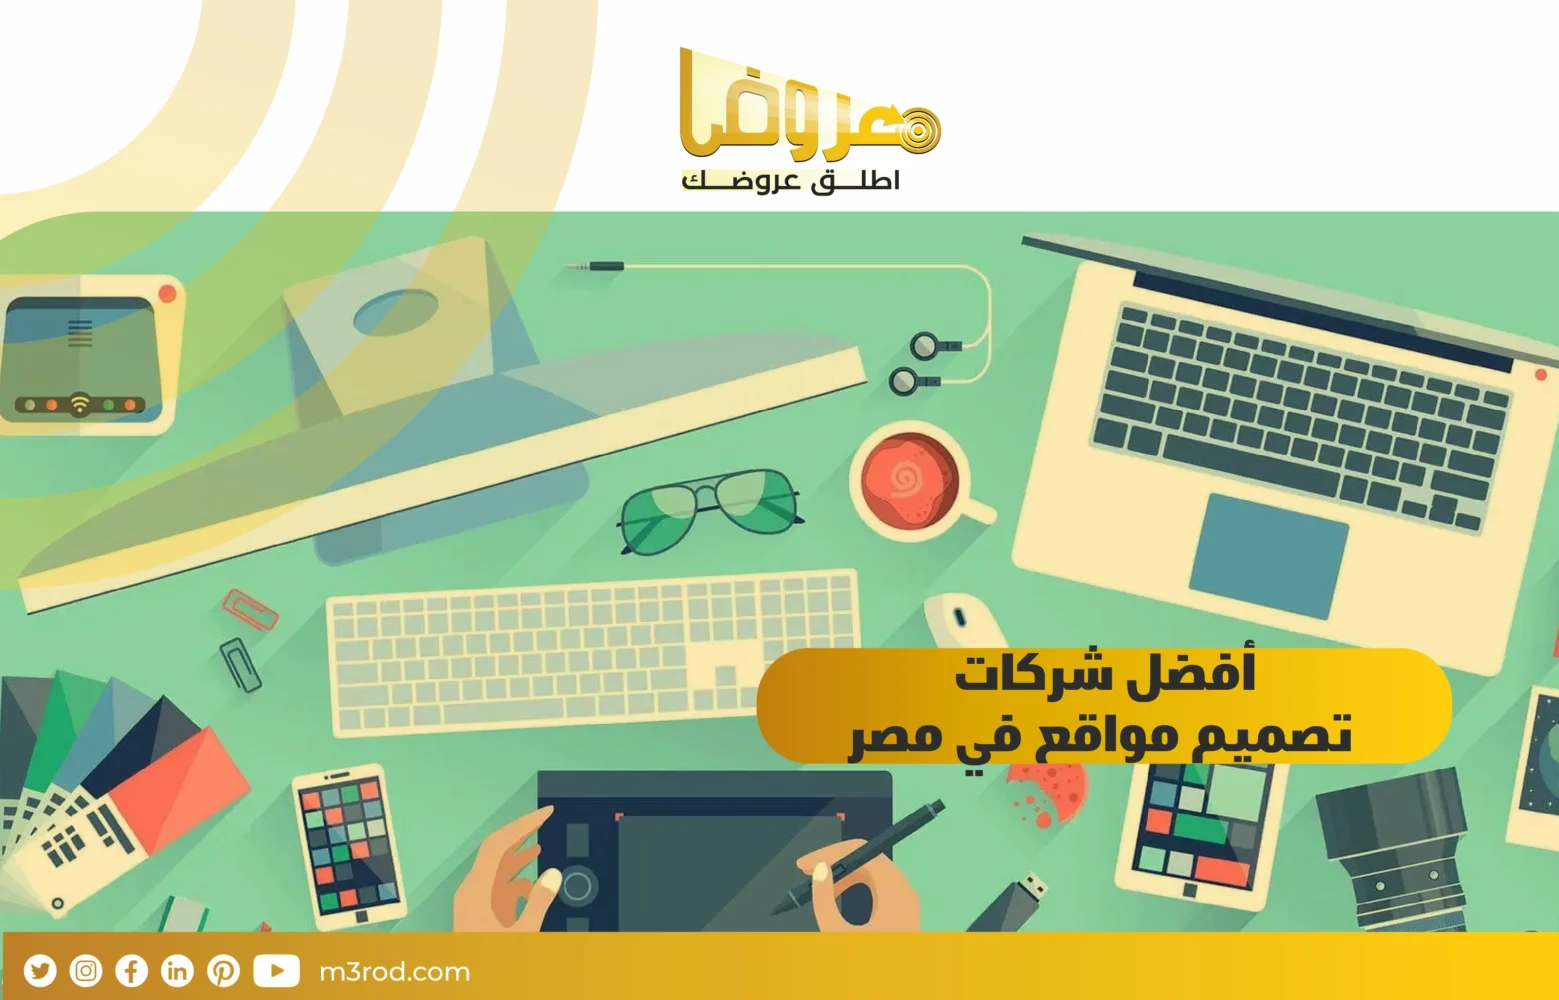 أفضل شركات تصميم المواقع في مصر